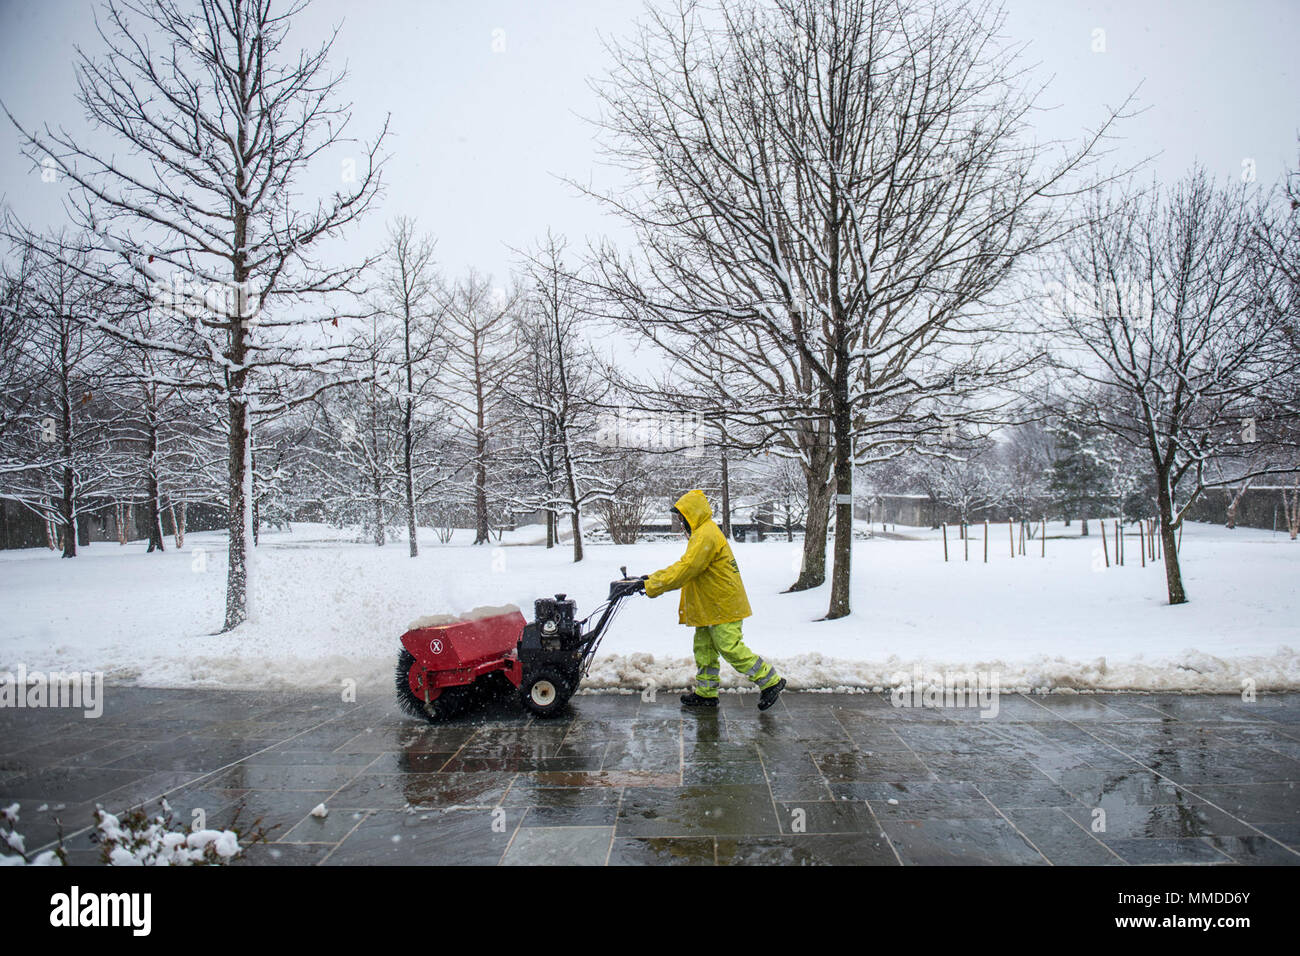 La neige est enlevée par un employé contractuel au centre de la Cour de columbarium du cimetière national d'Arlington, Arlington, Virginie, le 21 mars 2018. C'était le deuxième jour de printemps, quand une tempête de neige a frappé la région de la capitale nationale. (U.S. Army Banque D'Images